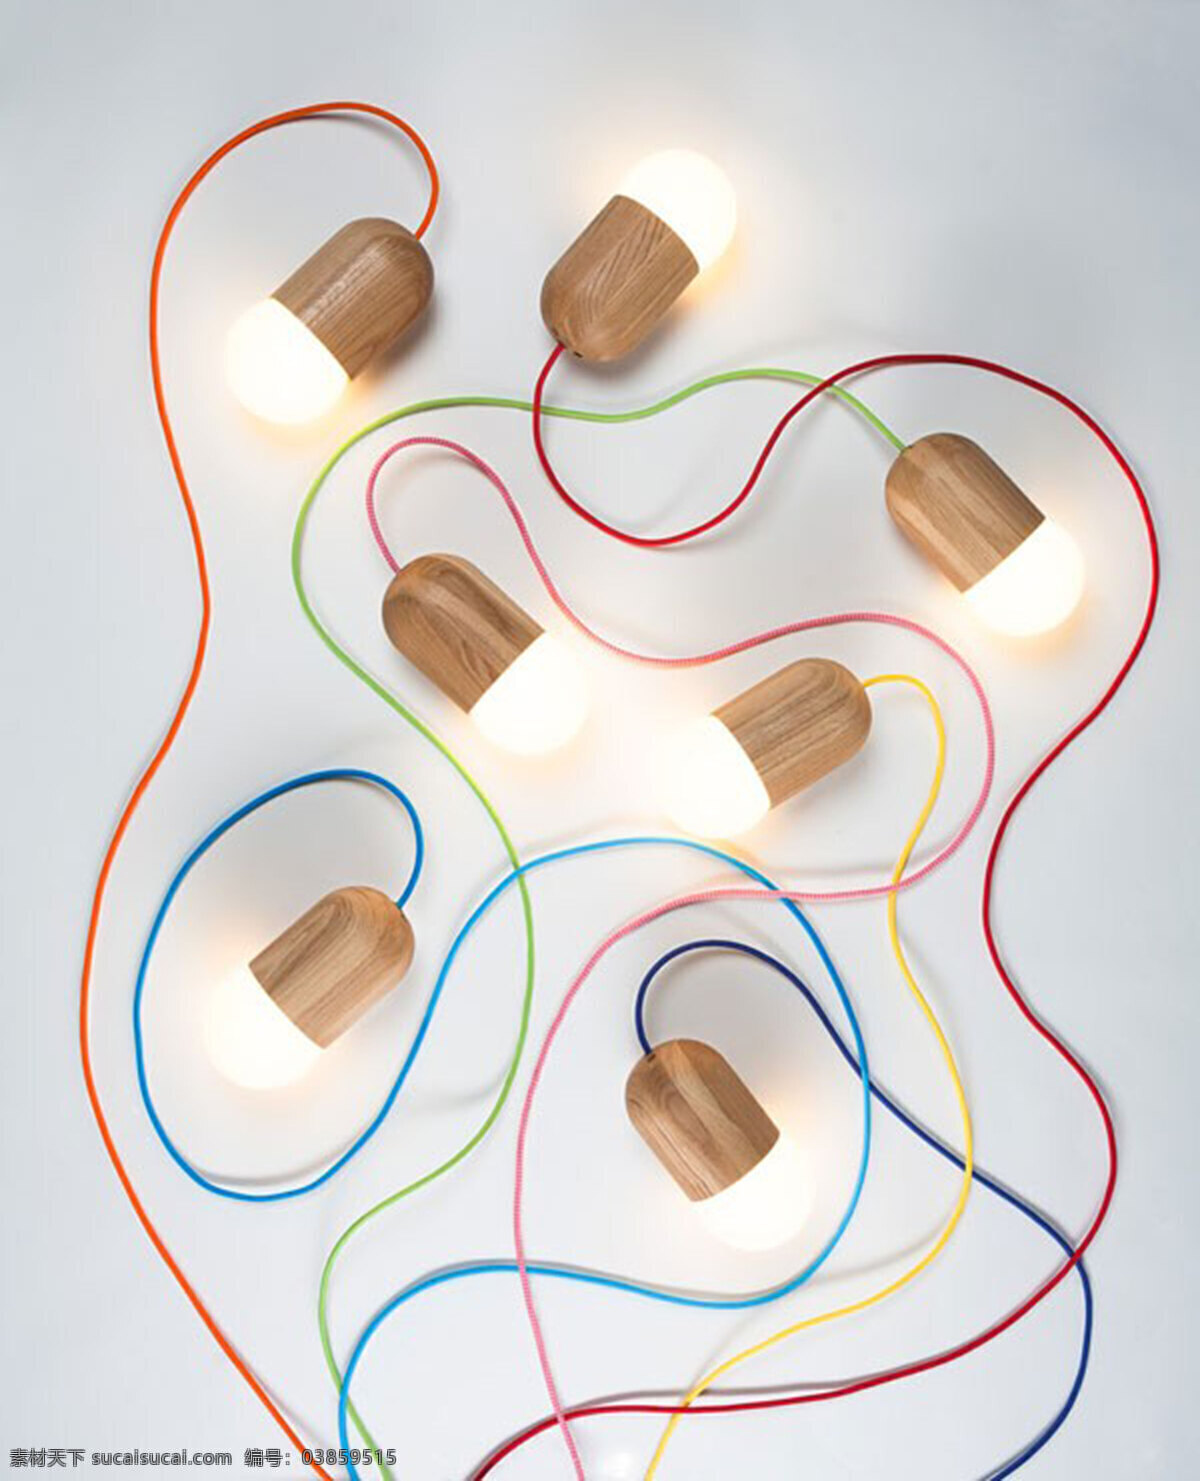 可爱 豆子 形状 吊灯 产品设计 创意 豆子形状 工业设计 科技 饰品 未来 照明设计